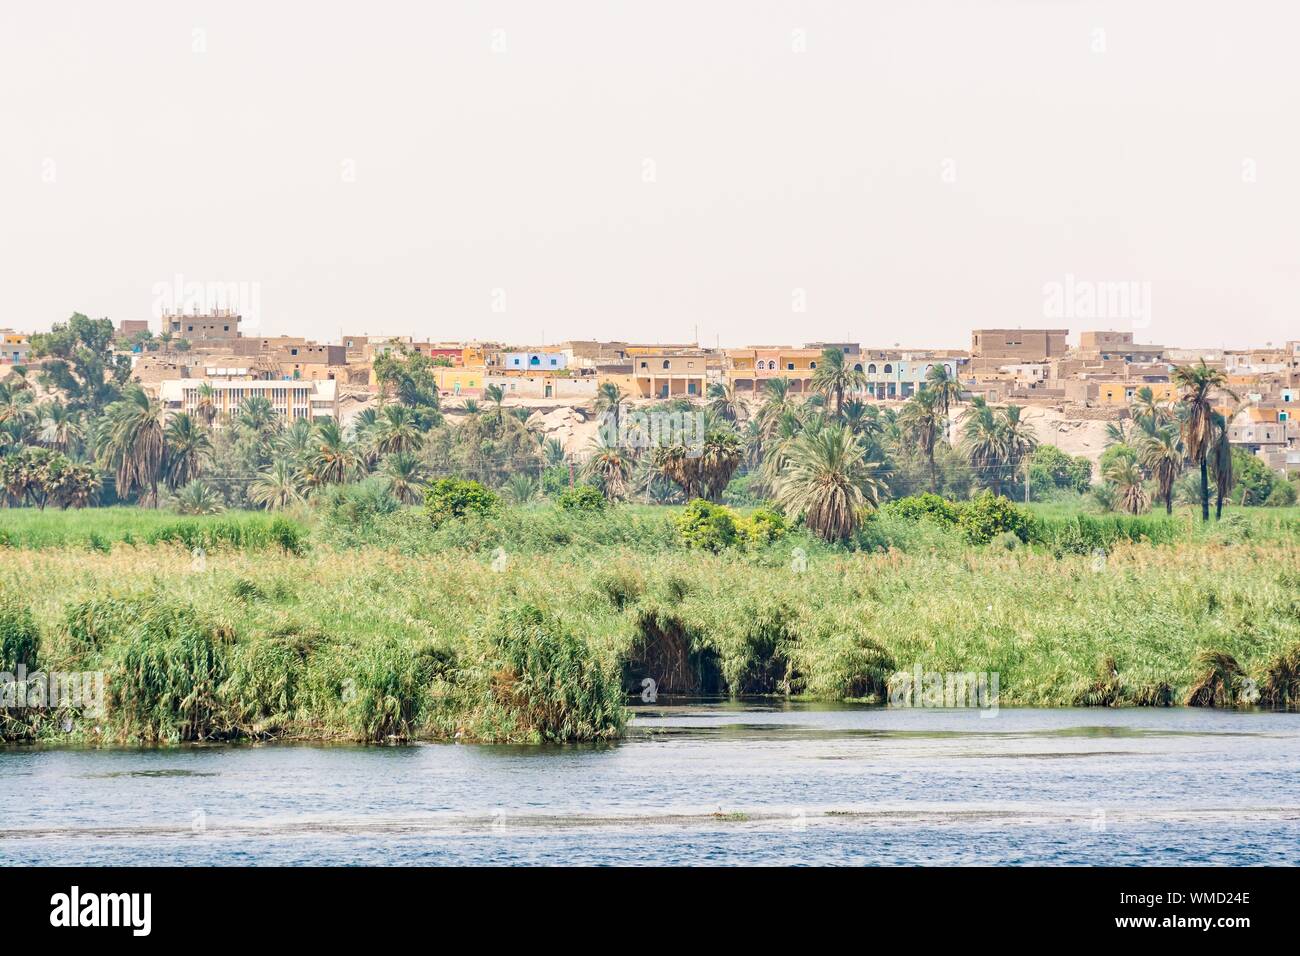 Banca del fiume Nilo visto durante la crociera turistica, Egitto Foto Stock